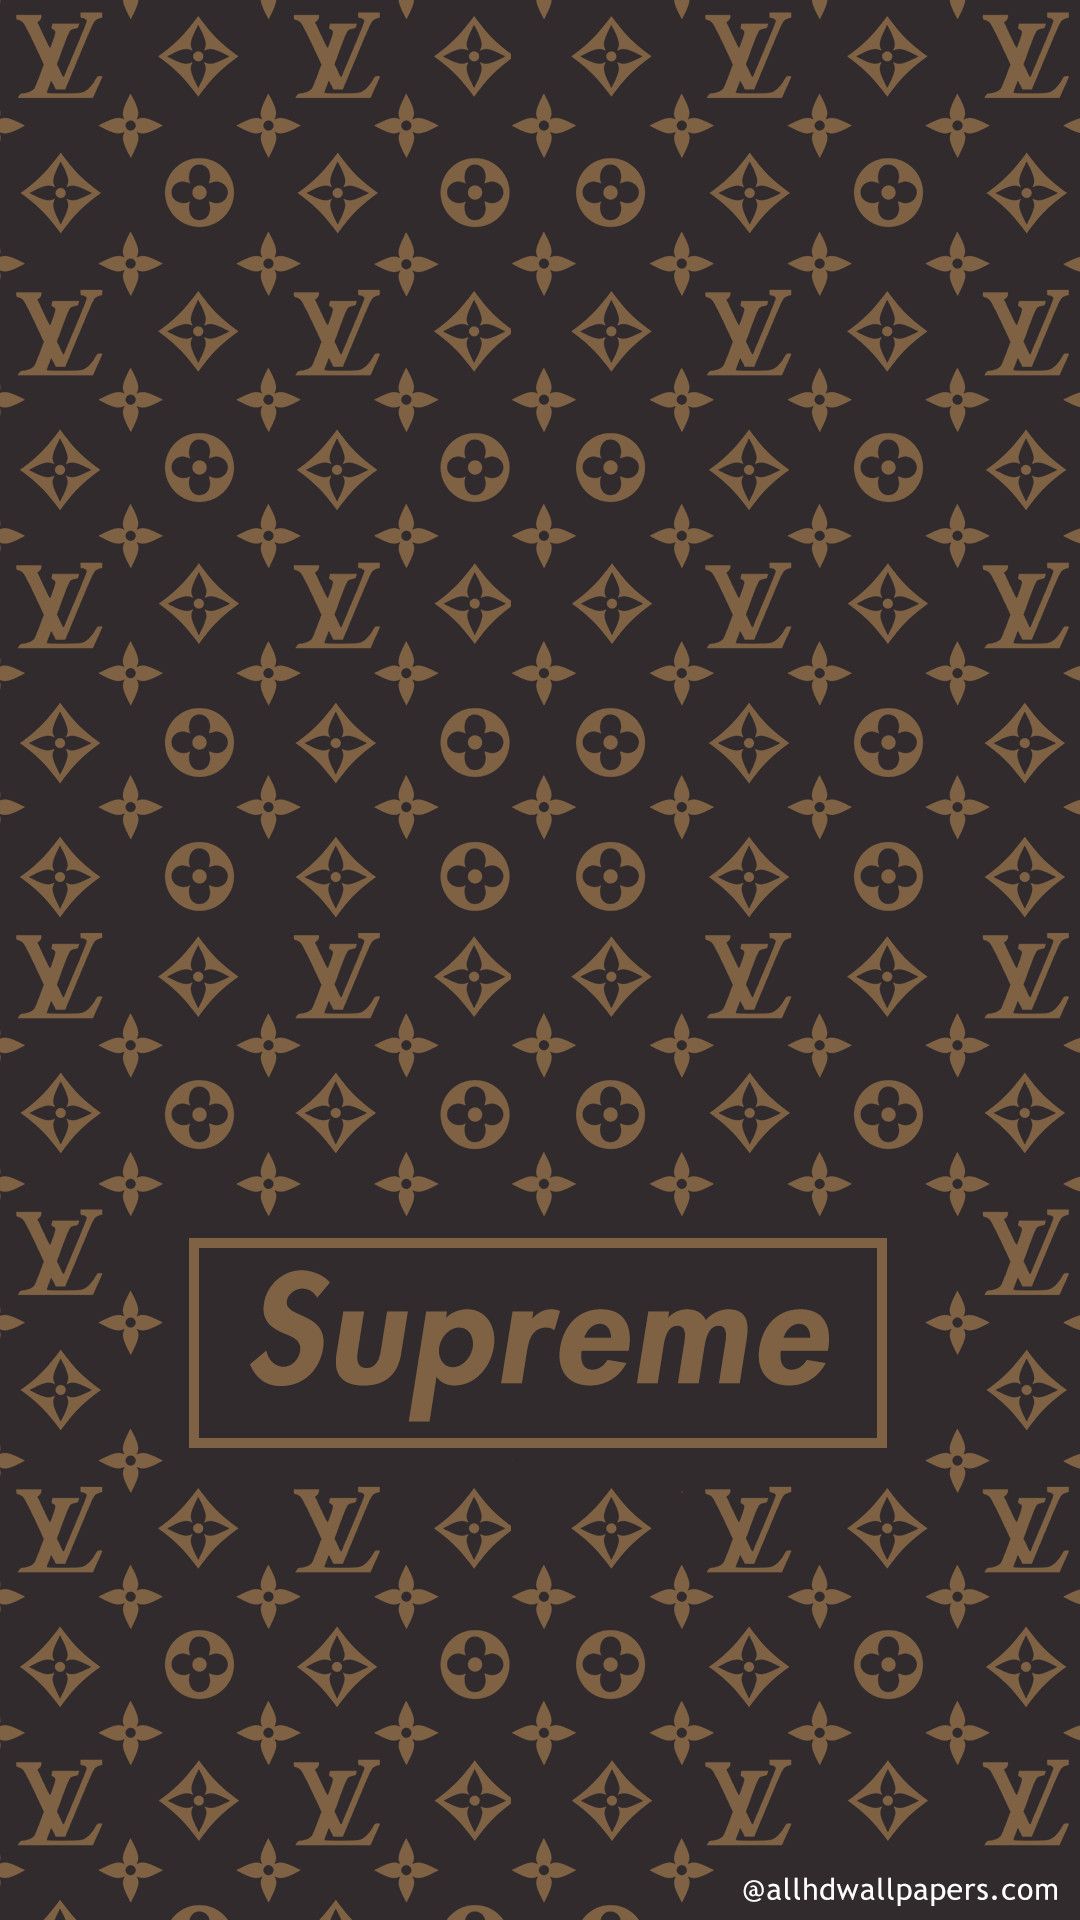 HD supreme lv wallpapers